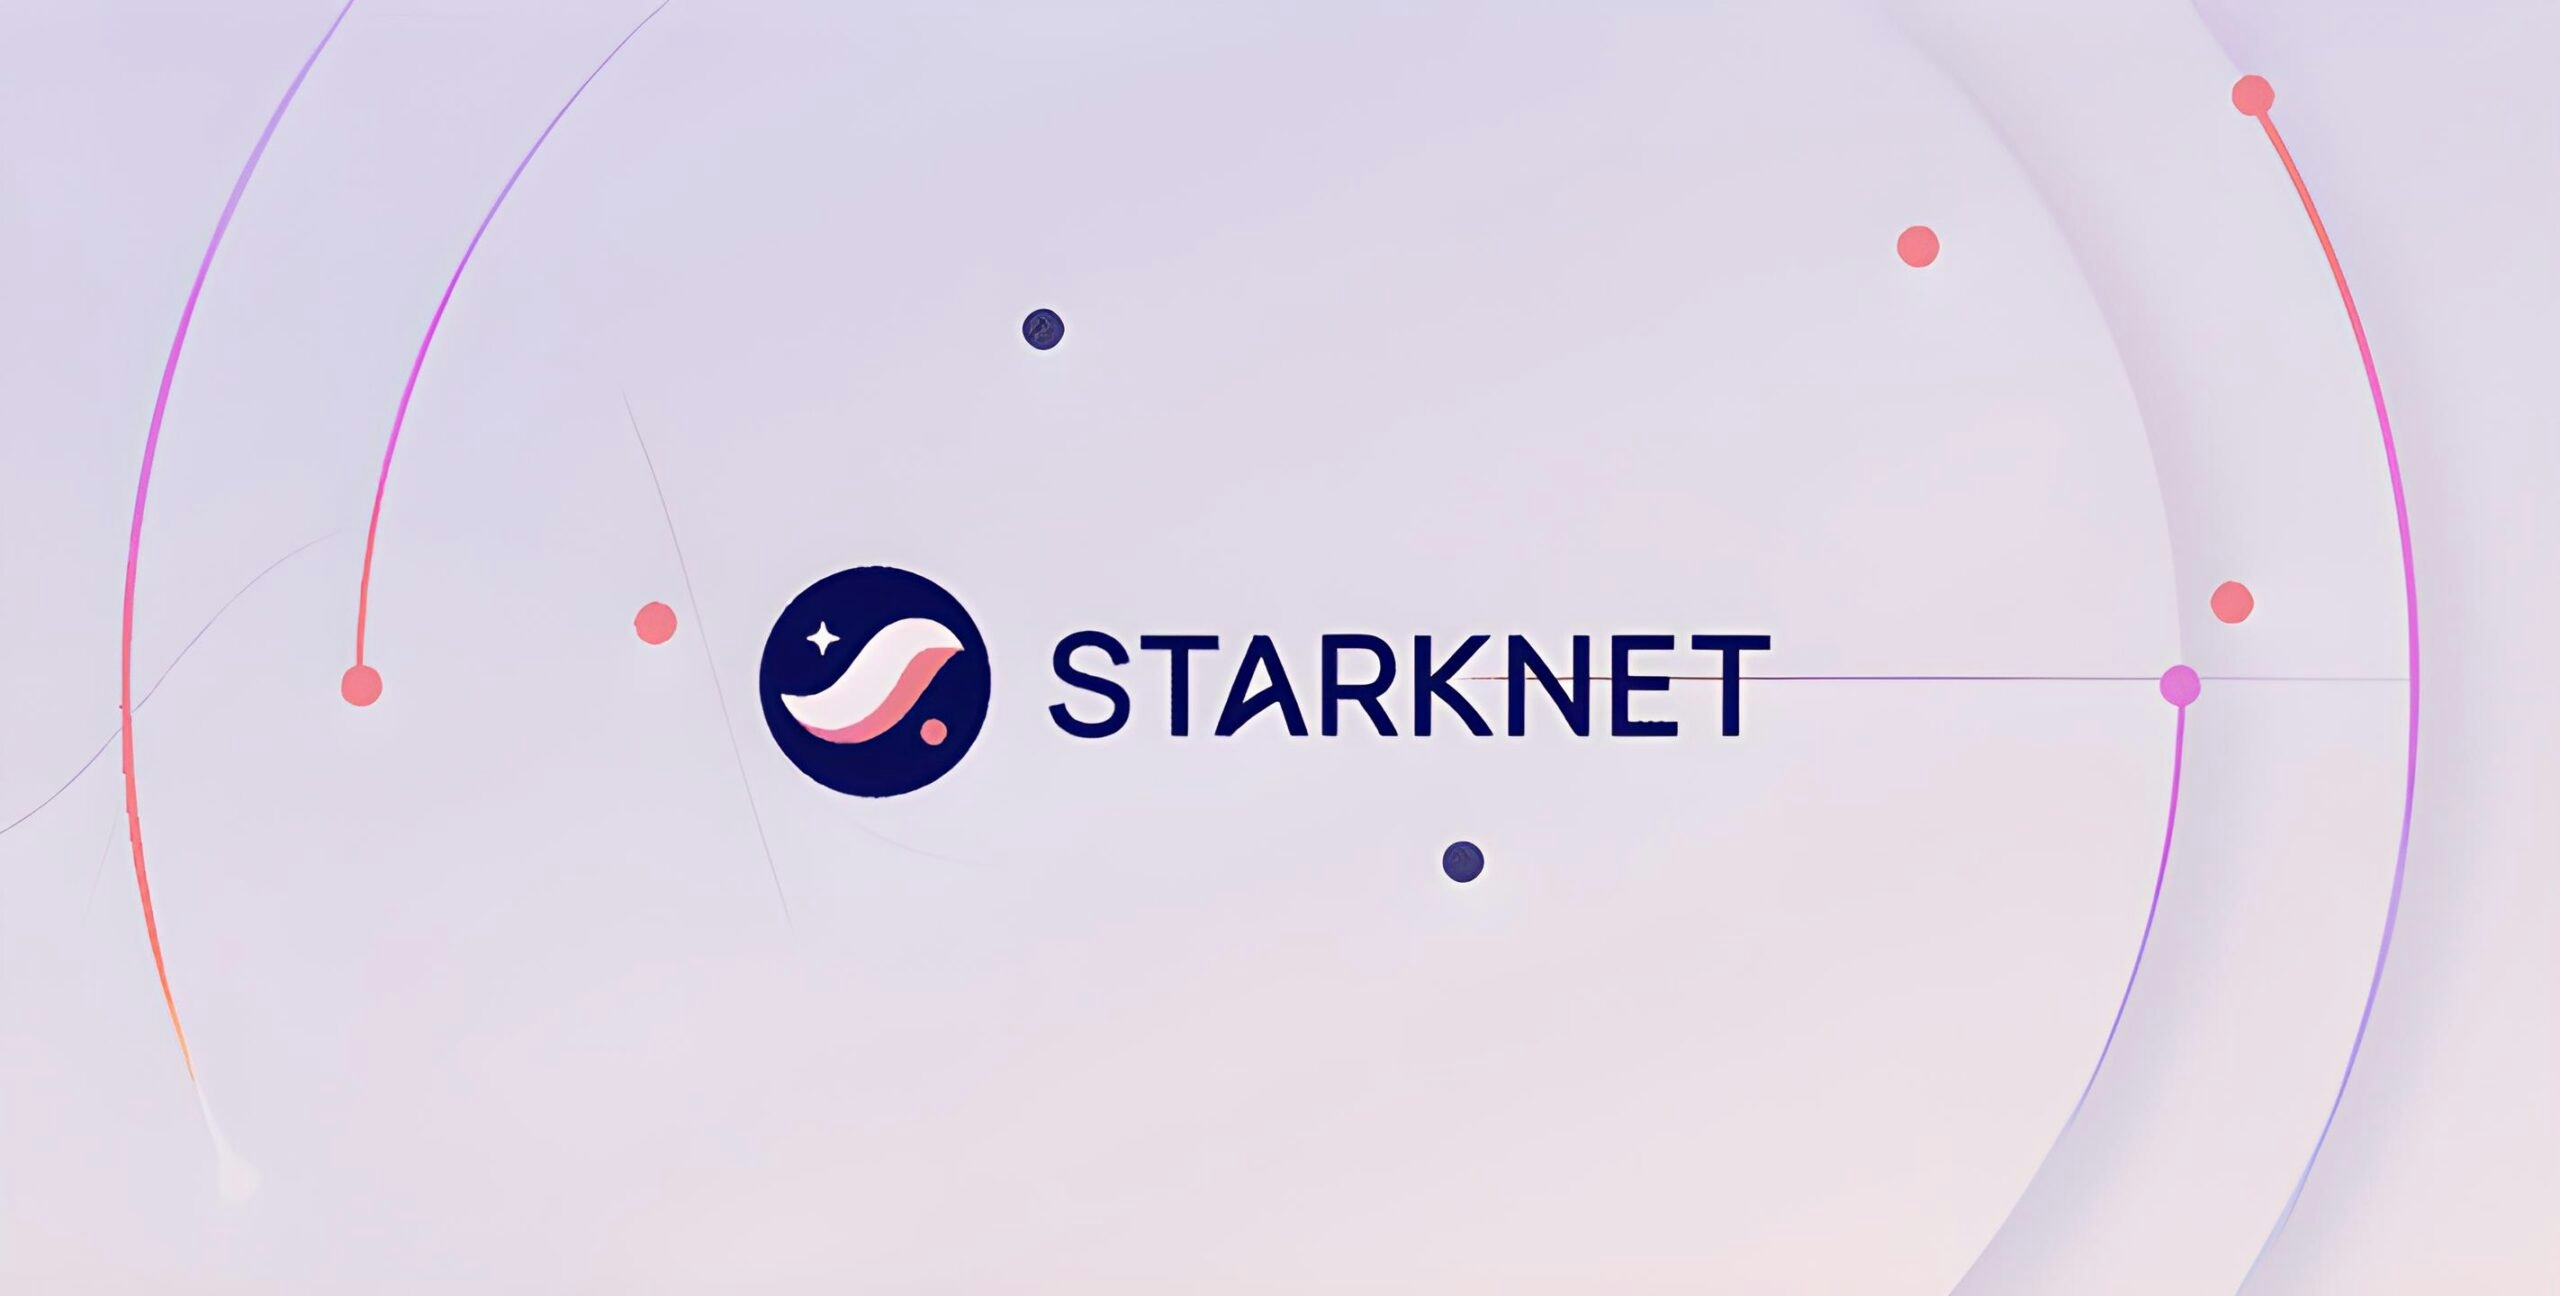 ¿Qué es Starknet? Lenguaje, Descentralización y Tokenomics